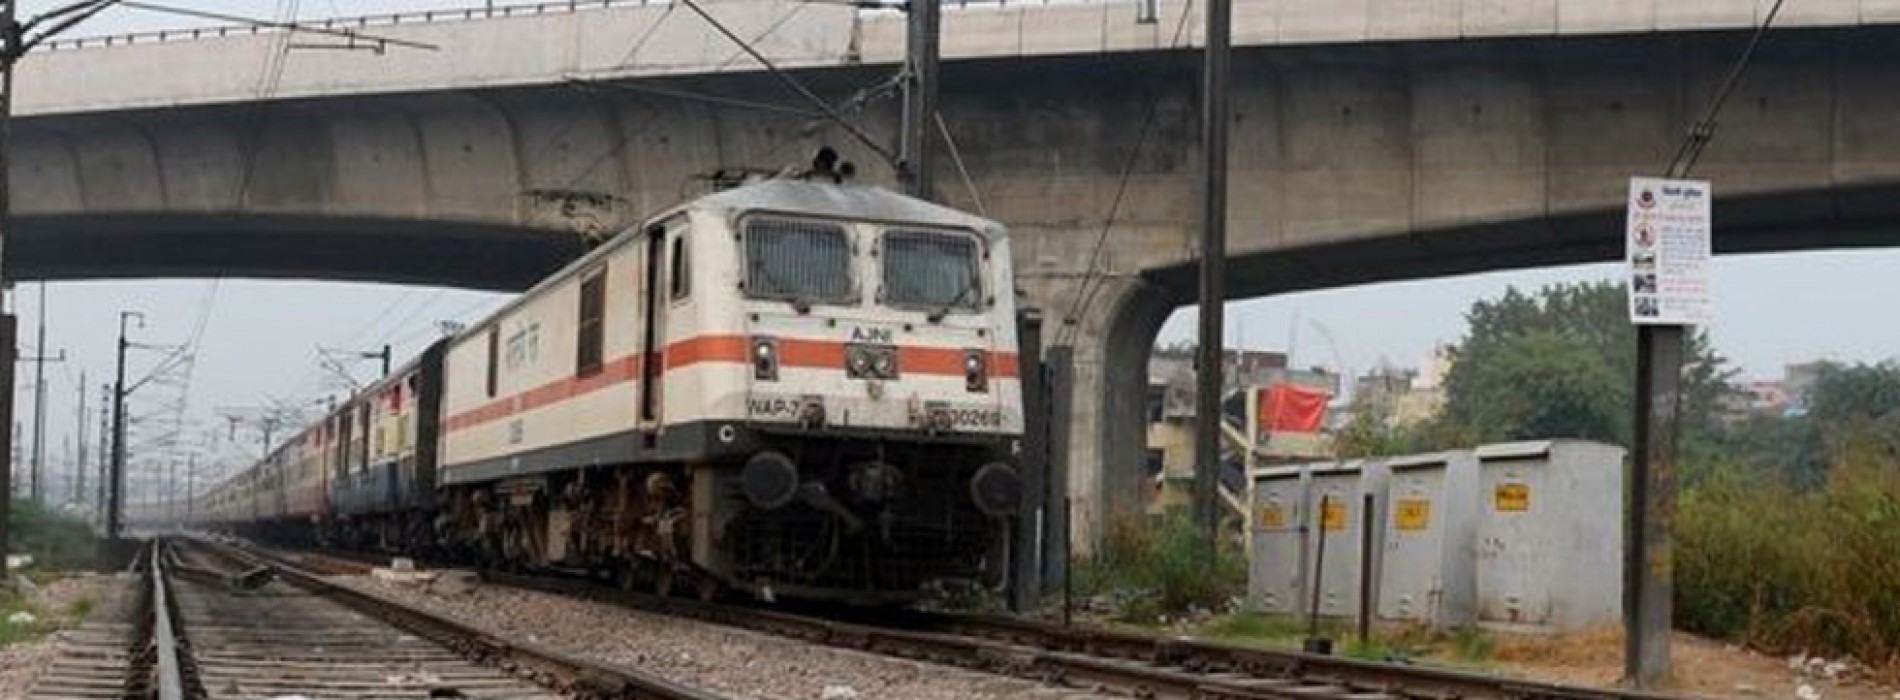 India teenagers die taking selfies with train